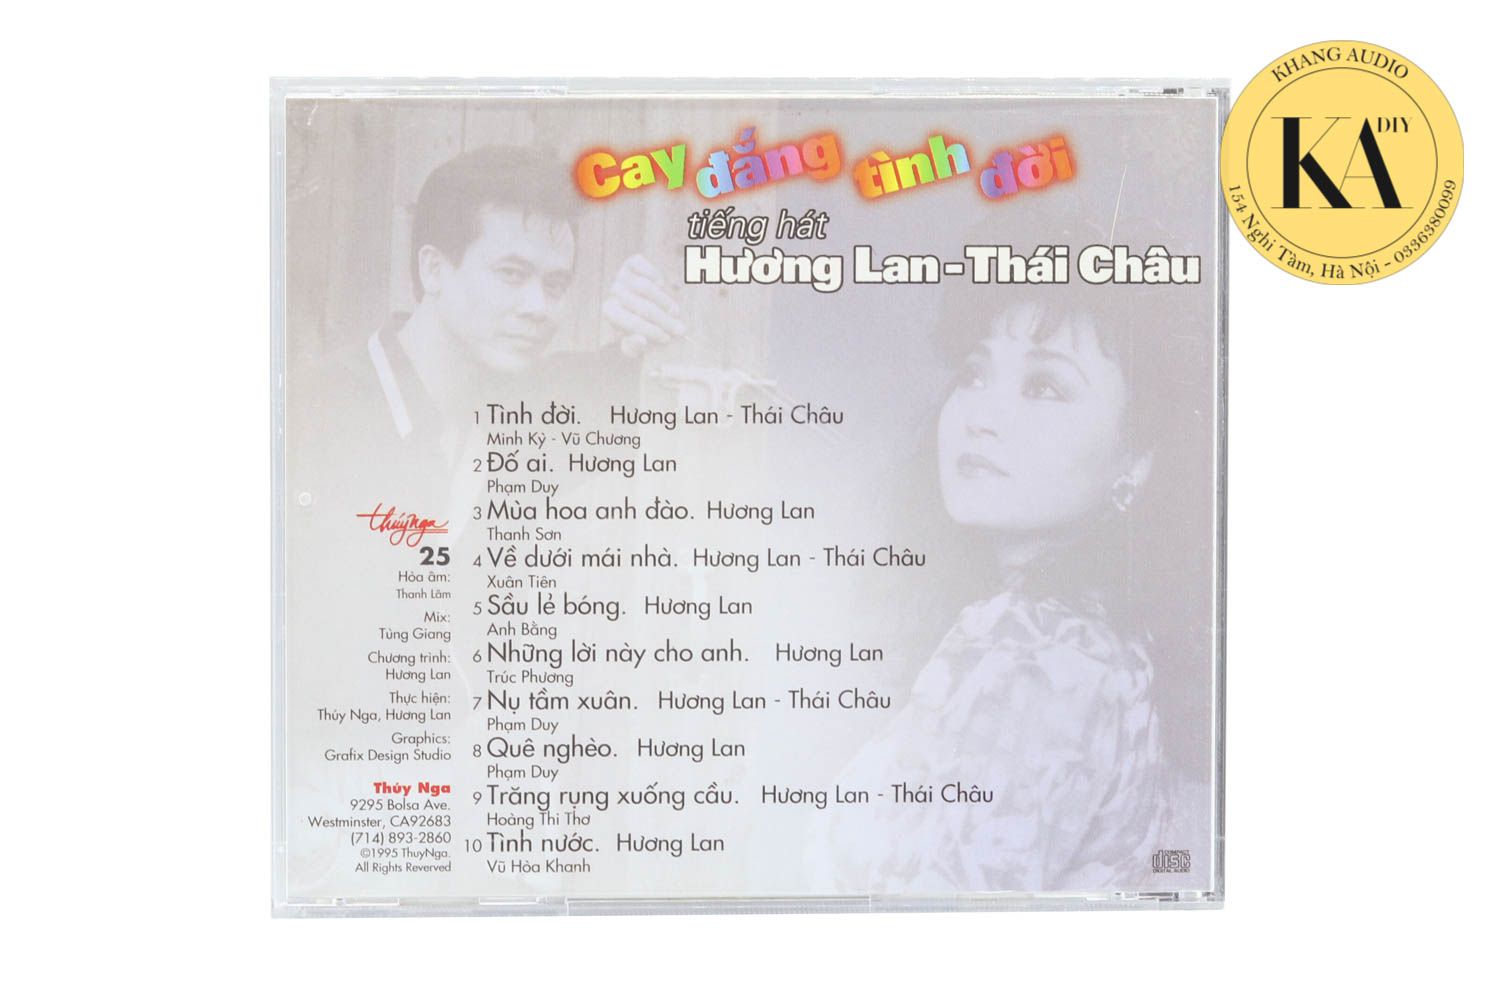 Cay Đắng Tình Đời - Hương Lan, Thái Châu Khang Audio 0336380099